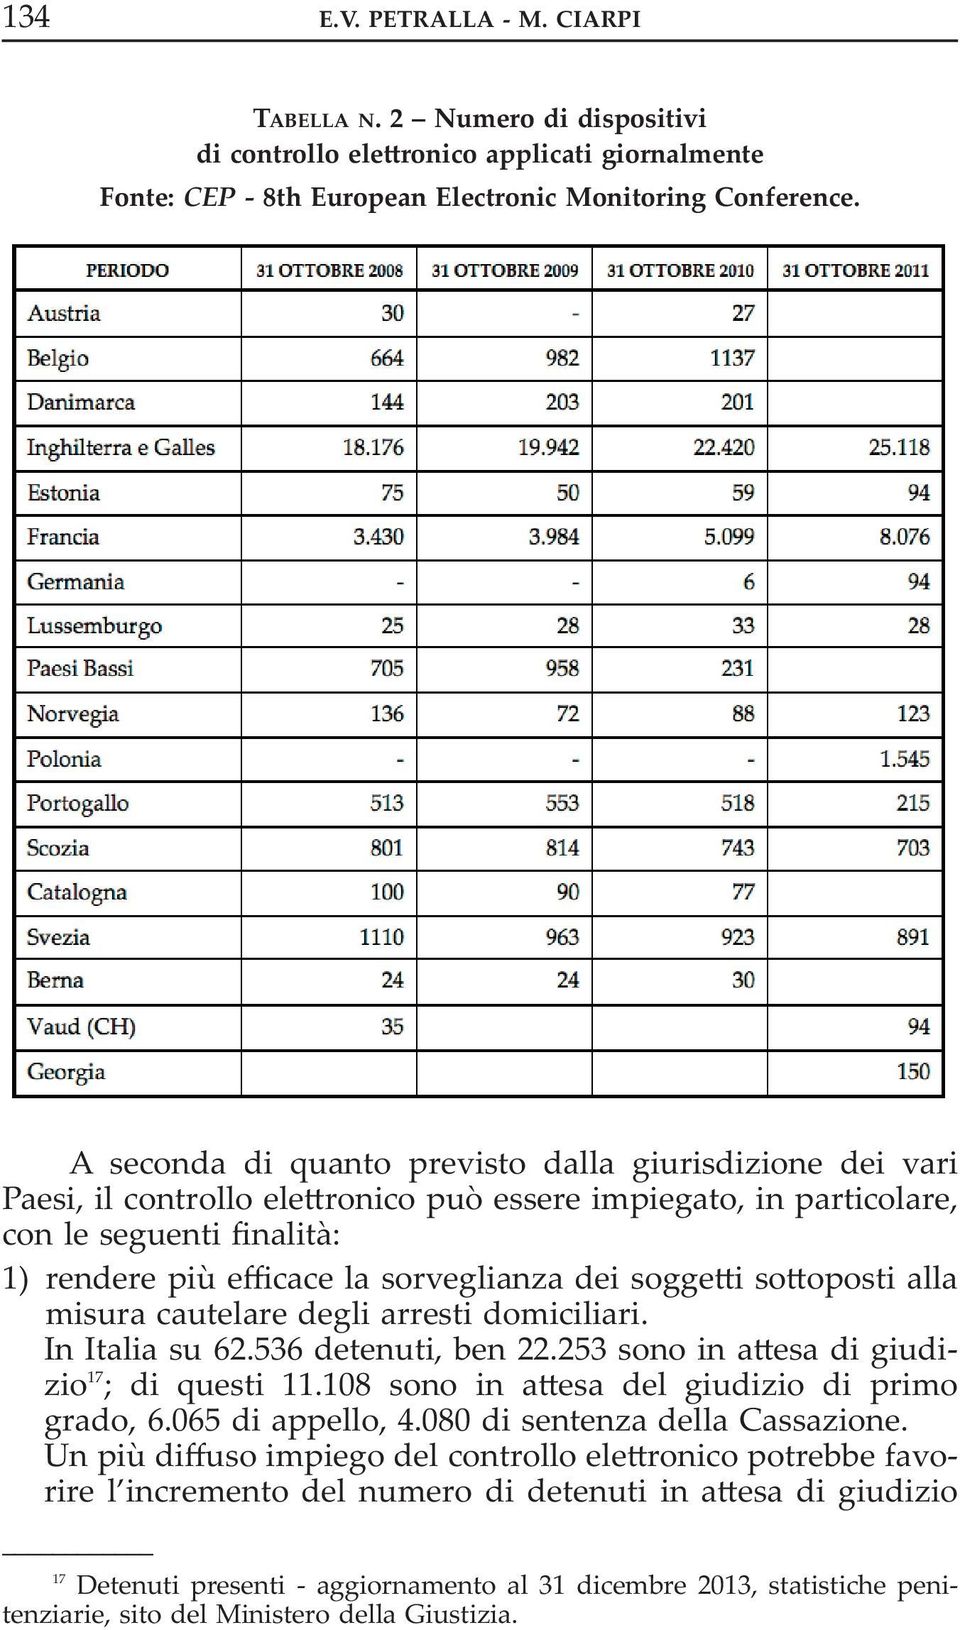 soggetti sottoposti alla misura cautelare degli arresti domiciliari. in italia su 62.536 detenuti, ben 22.253 sono in attesa di giudizio 17 ; di questi 11.